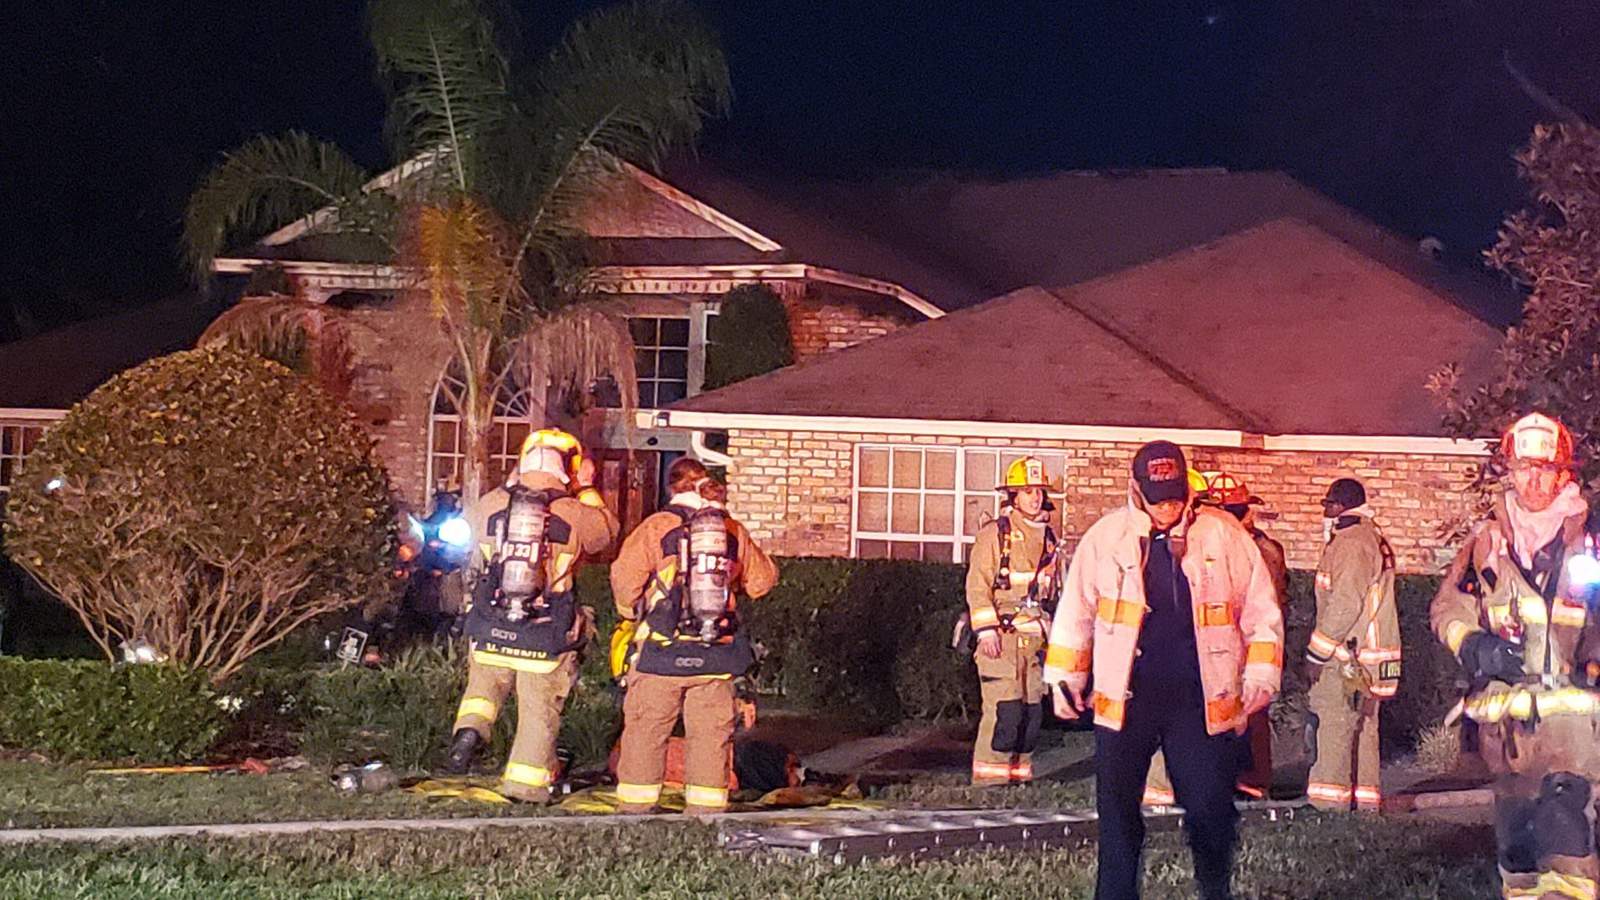 bomberos del Condado de Orange: “El incendio en la casa del Dj Johnny Magic probablemente comenzó en la chimenea”